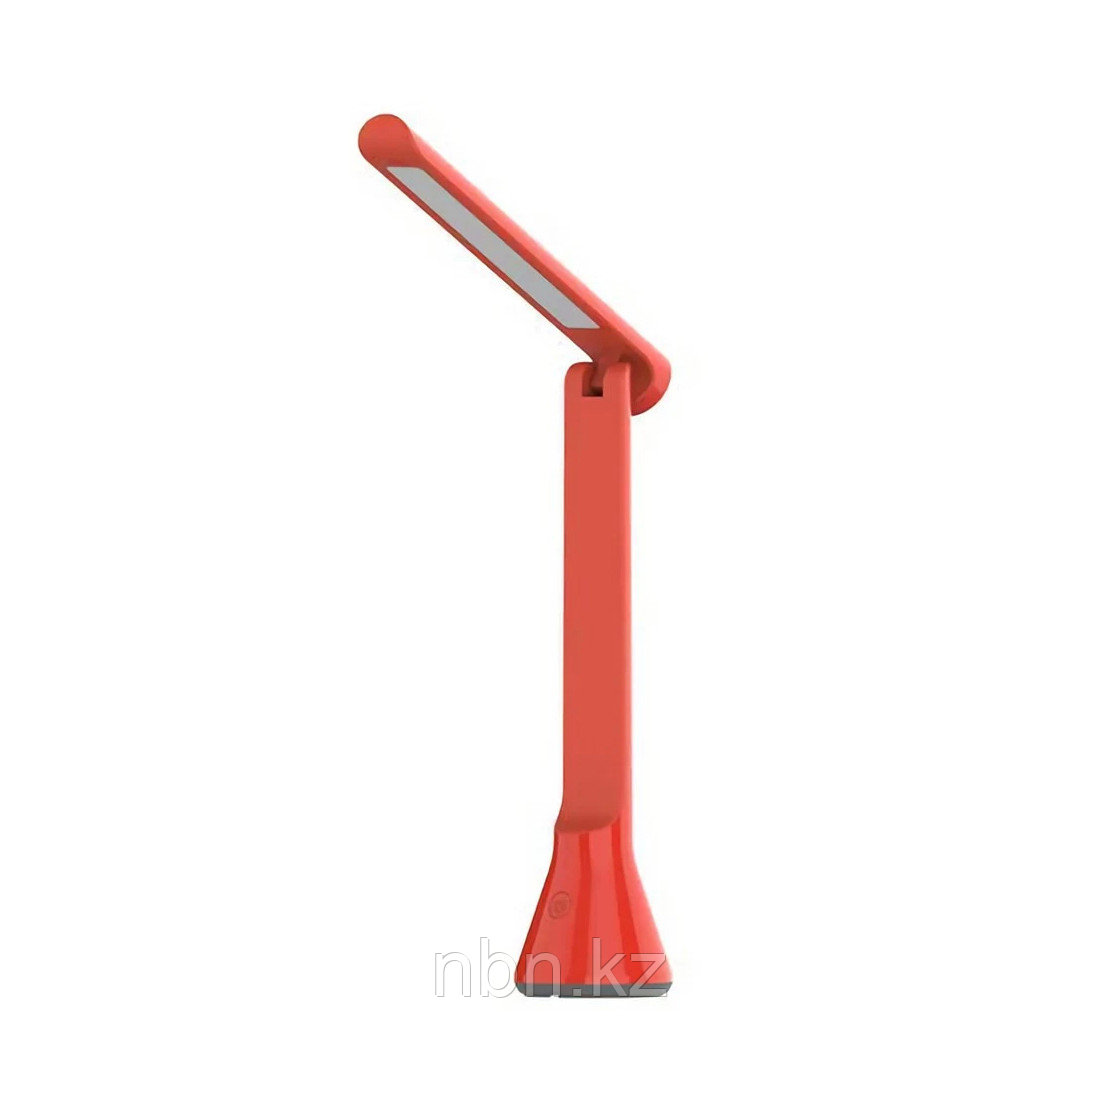 Настольная лампа Yeelight folding table lamp (red), фото 1